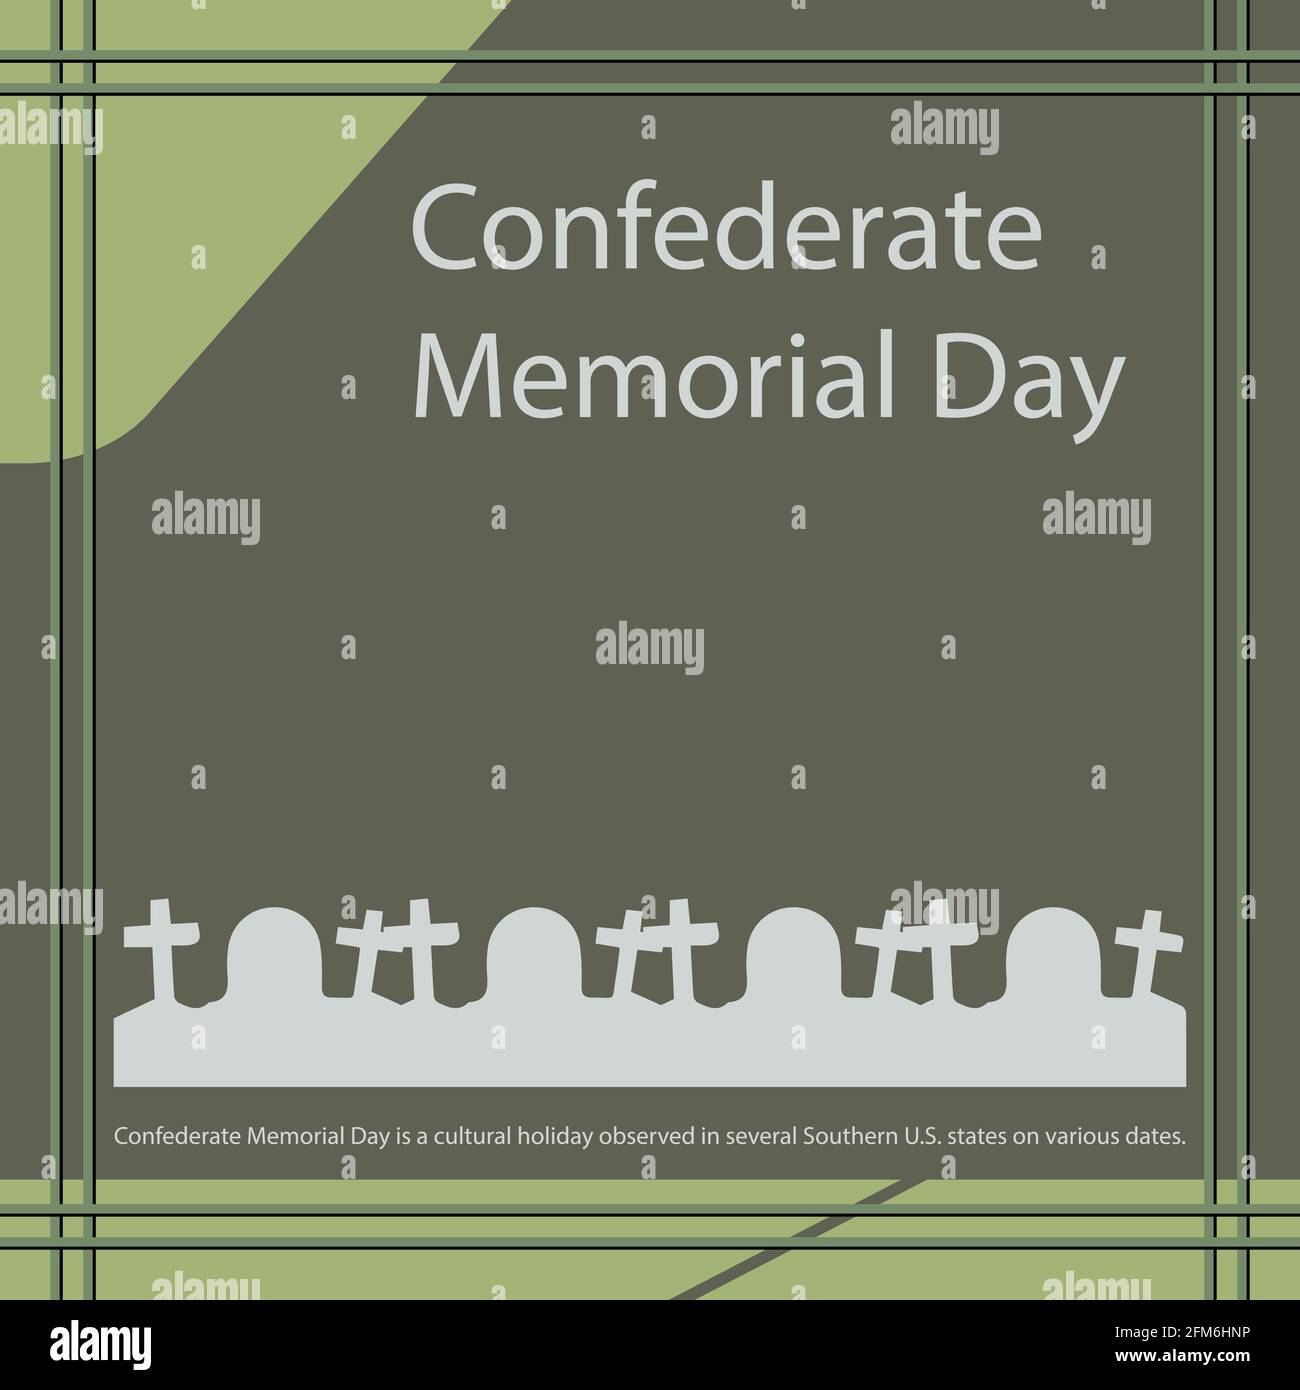 Der Confederate Memorial Day ist ein Kulturfeiertag, der an verschiedenen Tagen in mehreren Bundesstaaten der Südstaaten der USA begangen wird. Stock Vektor